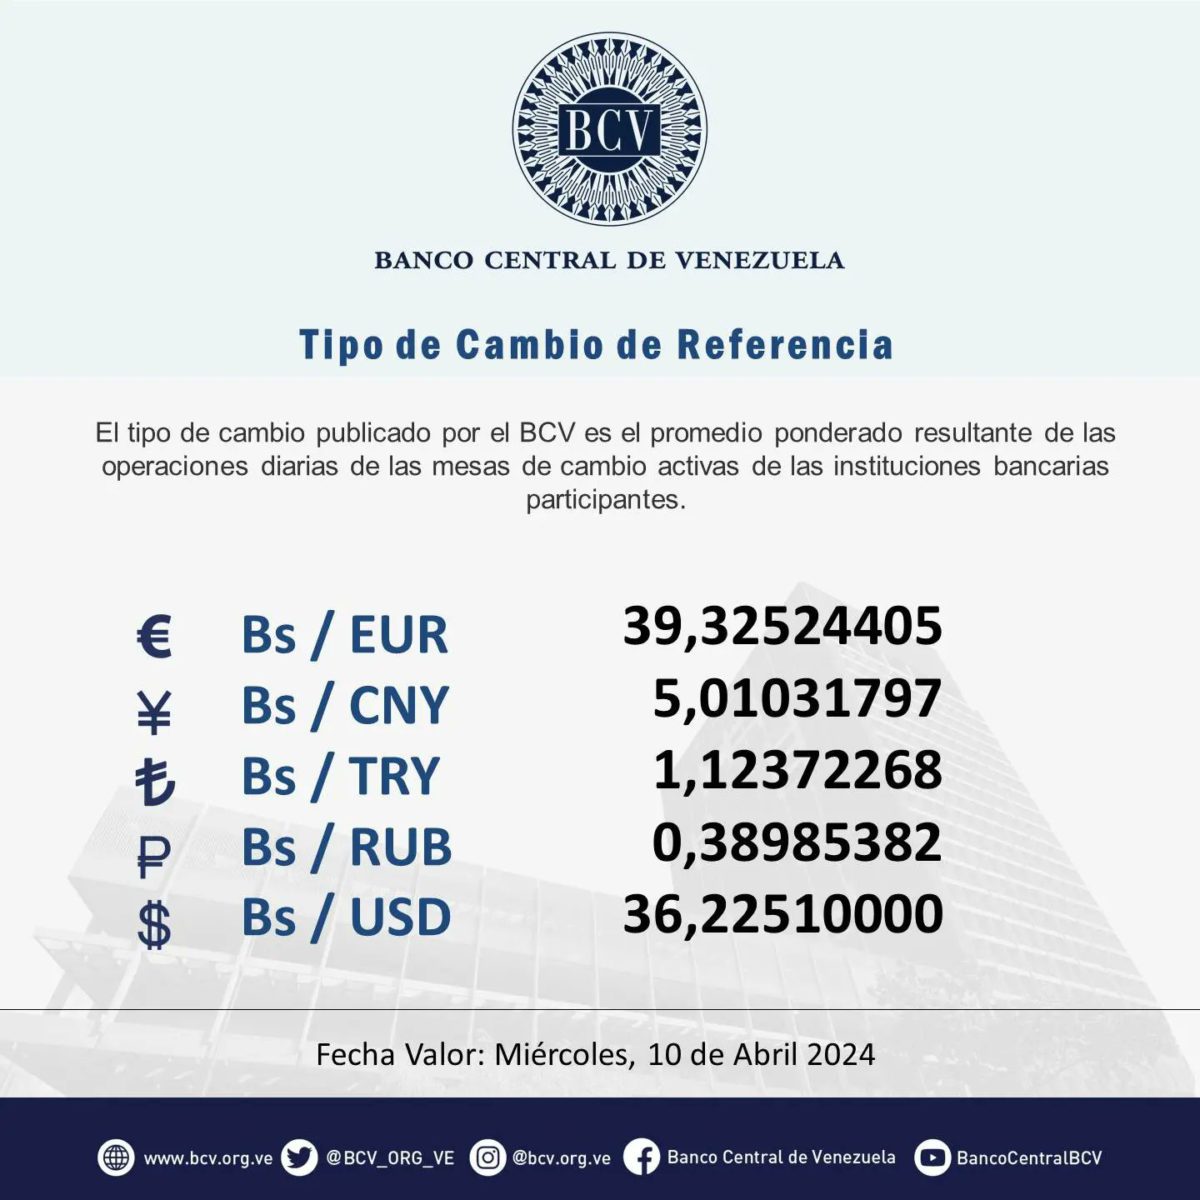 dolartoday en venezuela precio del dolar este miercoles 10 de abril de 2024 laverdaddemonagas.com bcv43